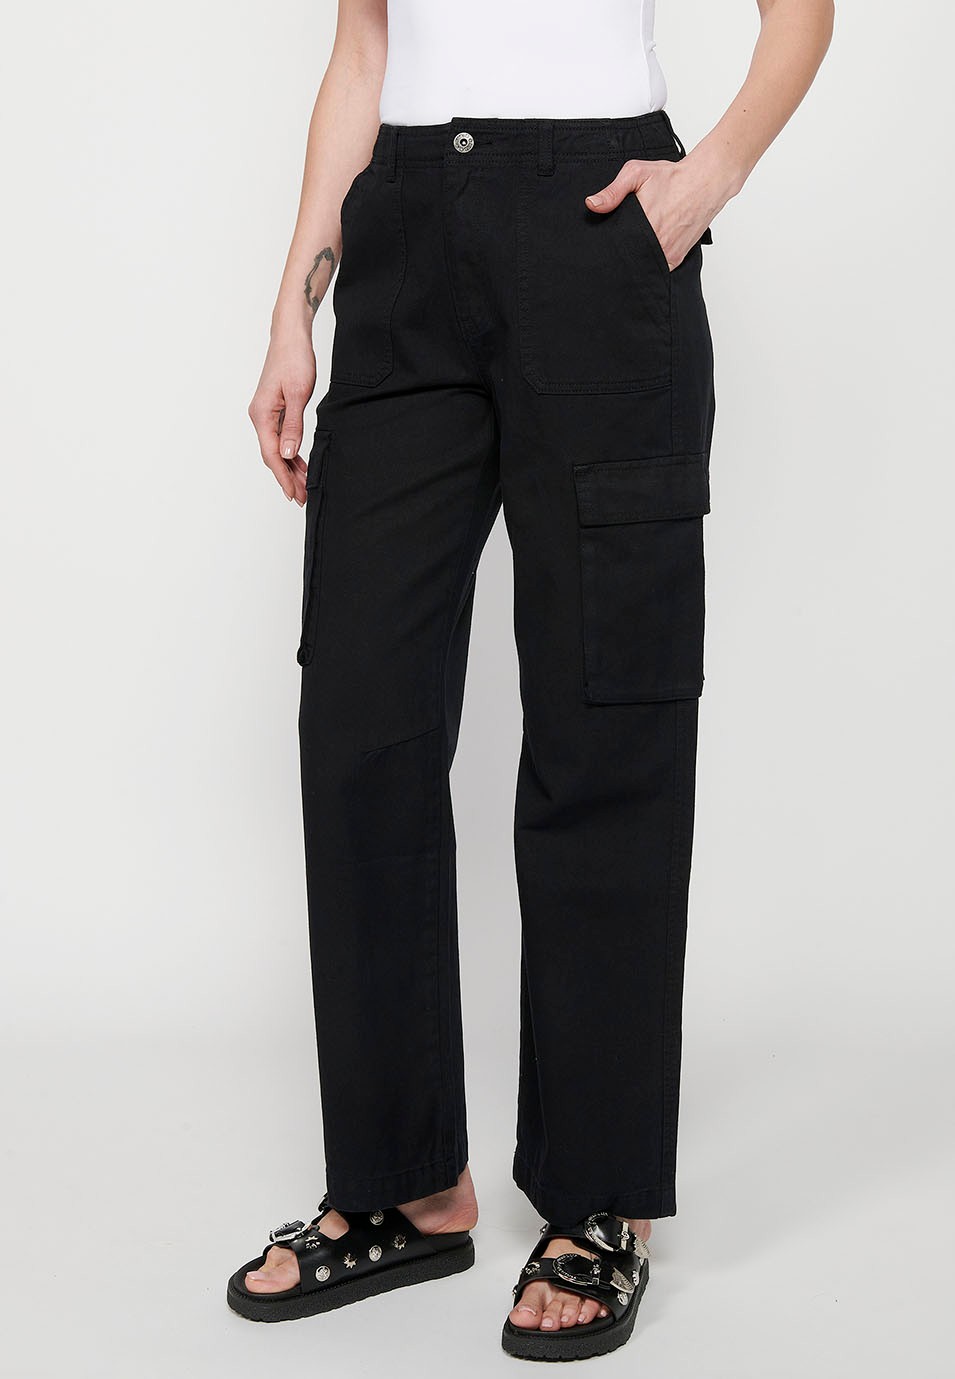 Pantalons llargs amb butxaques càrrec de cotó, color negre per a dona